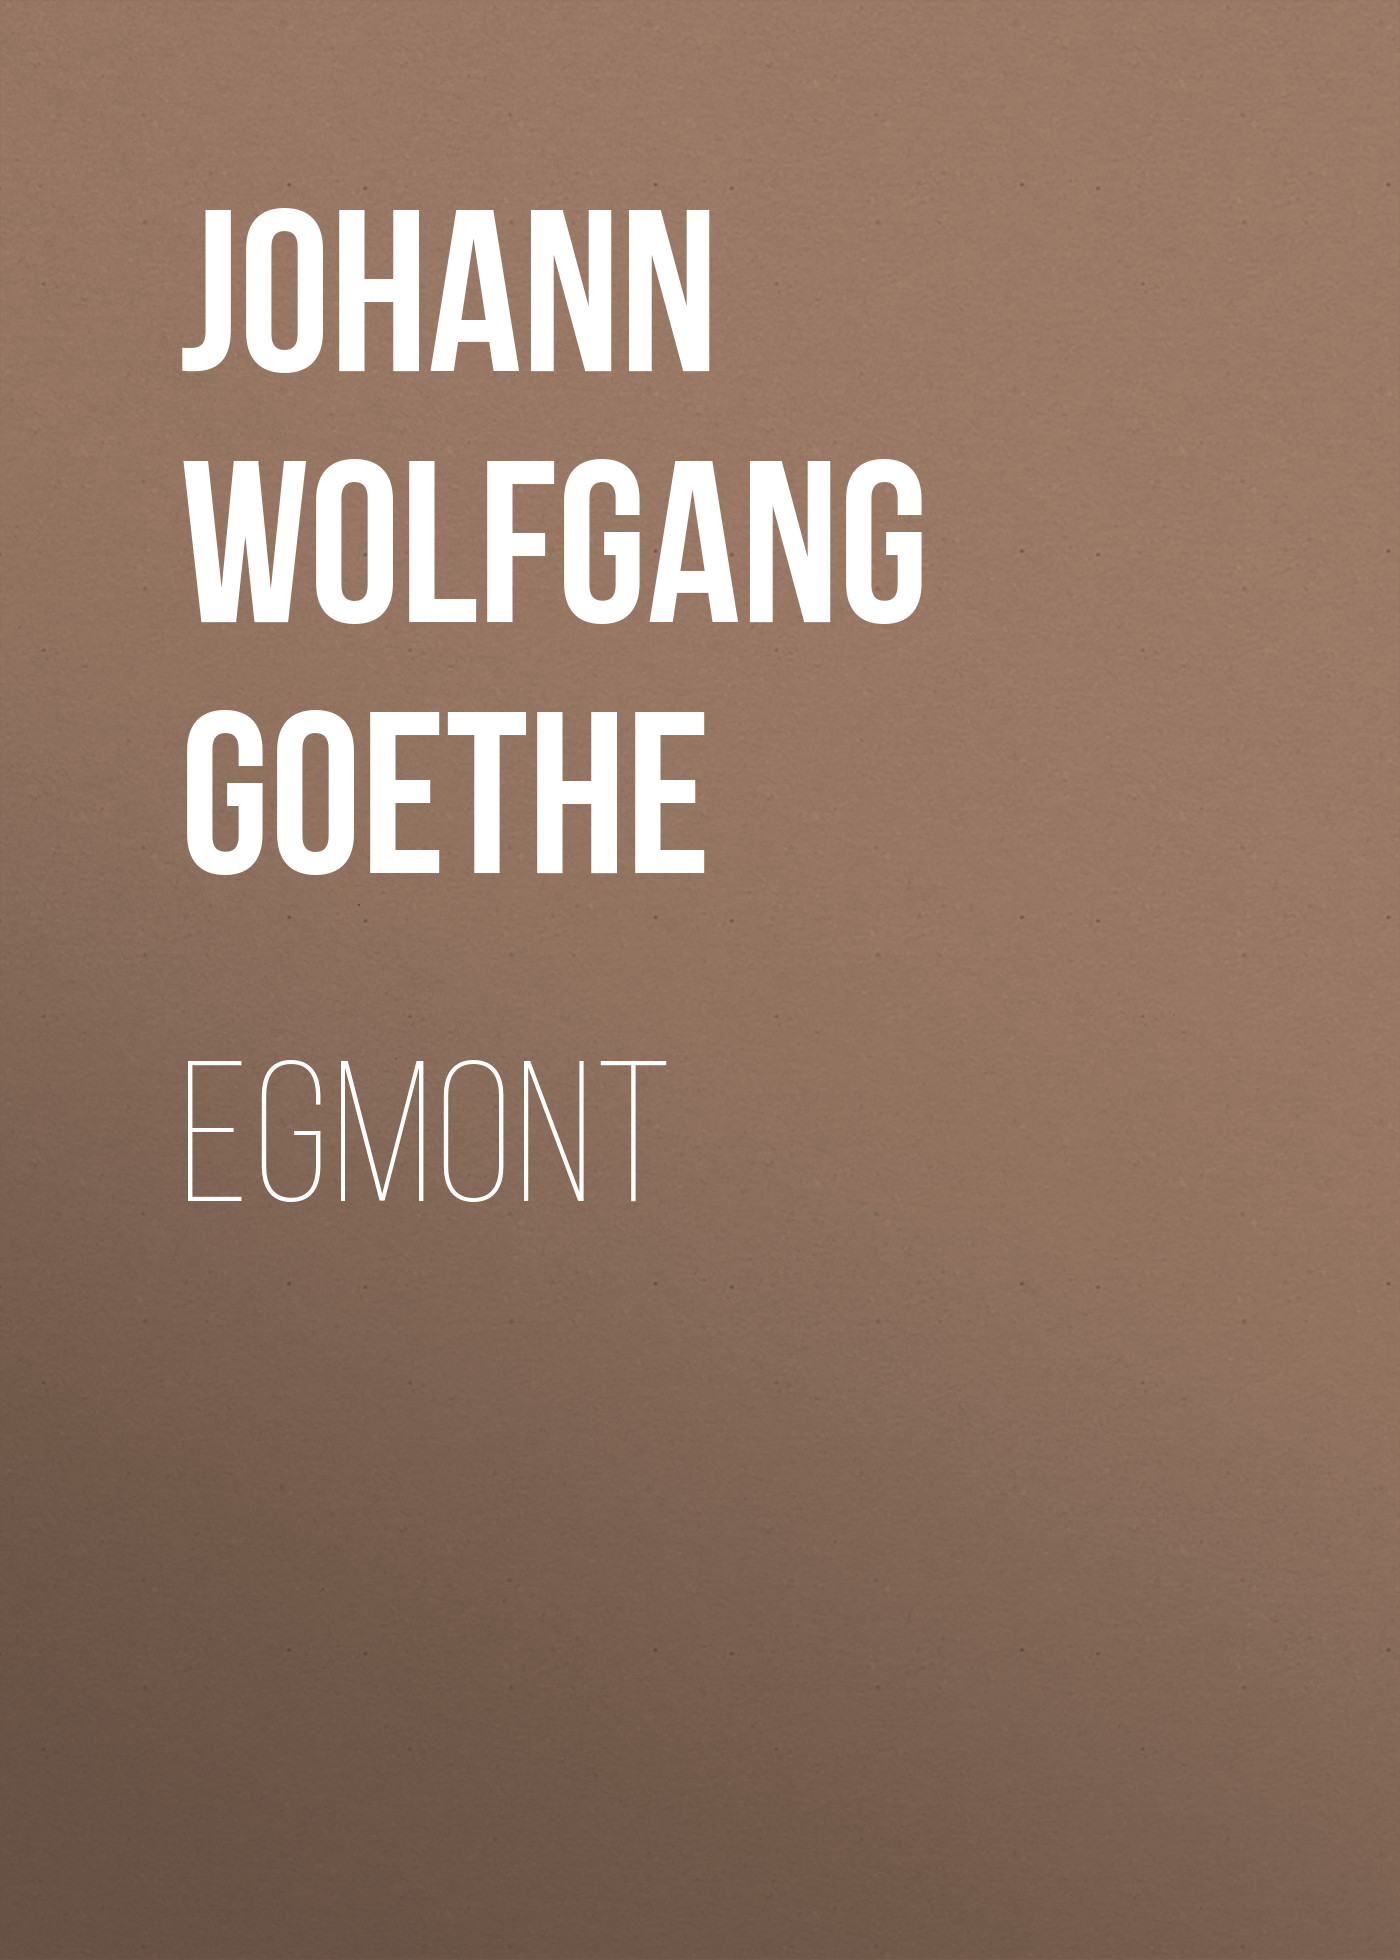 Книга Egmont из серии , созданная Johann von Goethe, может относится к жанру Зарубежная старинная литература, Зарубежная классика. Стоимость электронной книги Egmont с идентификатором 25202999 составляет 0 руб.